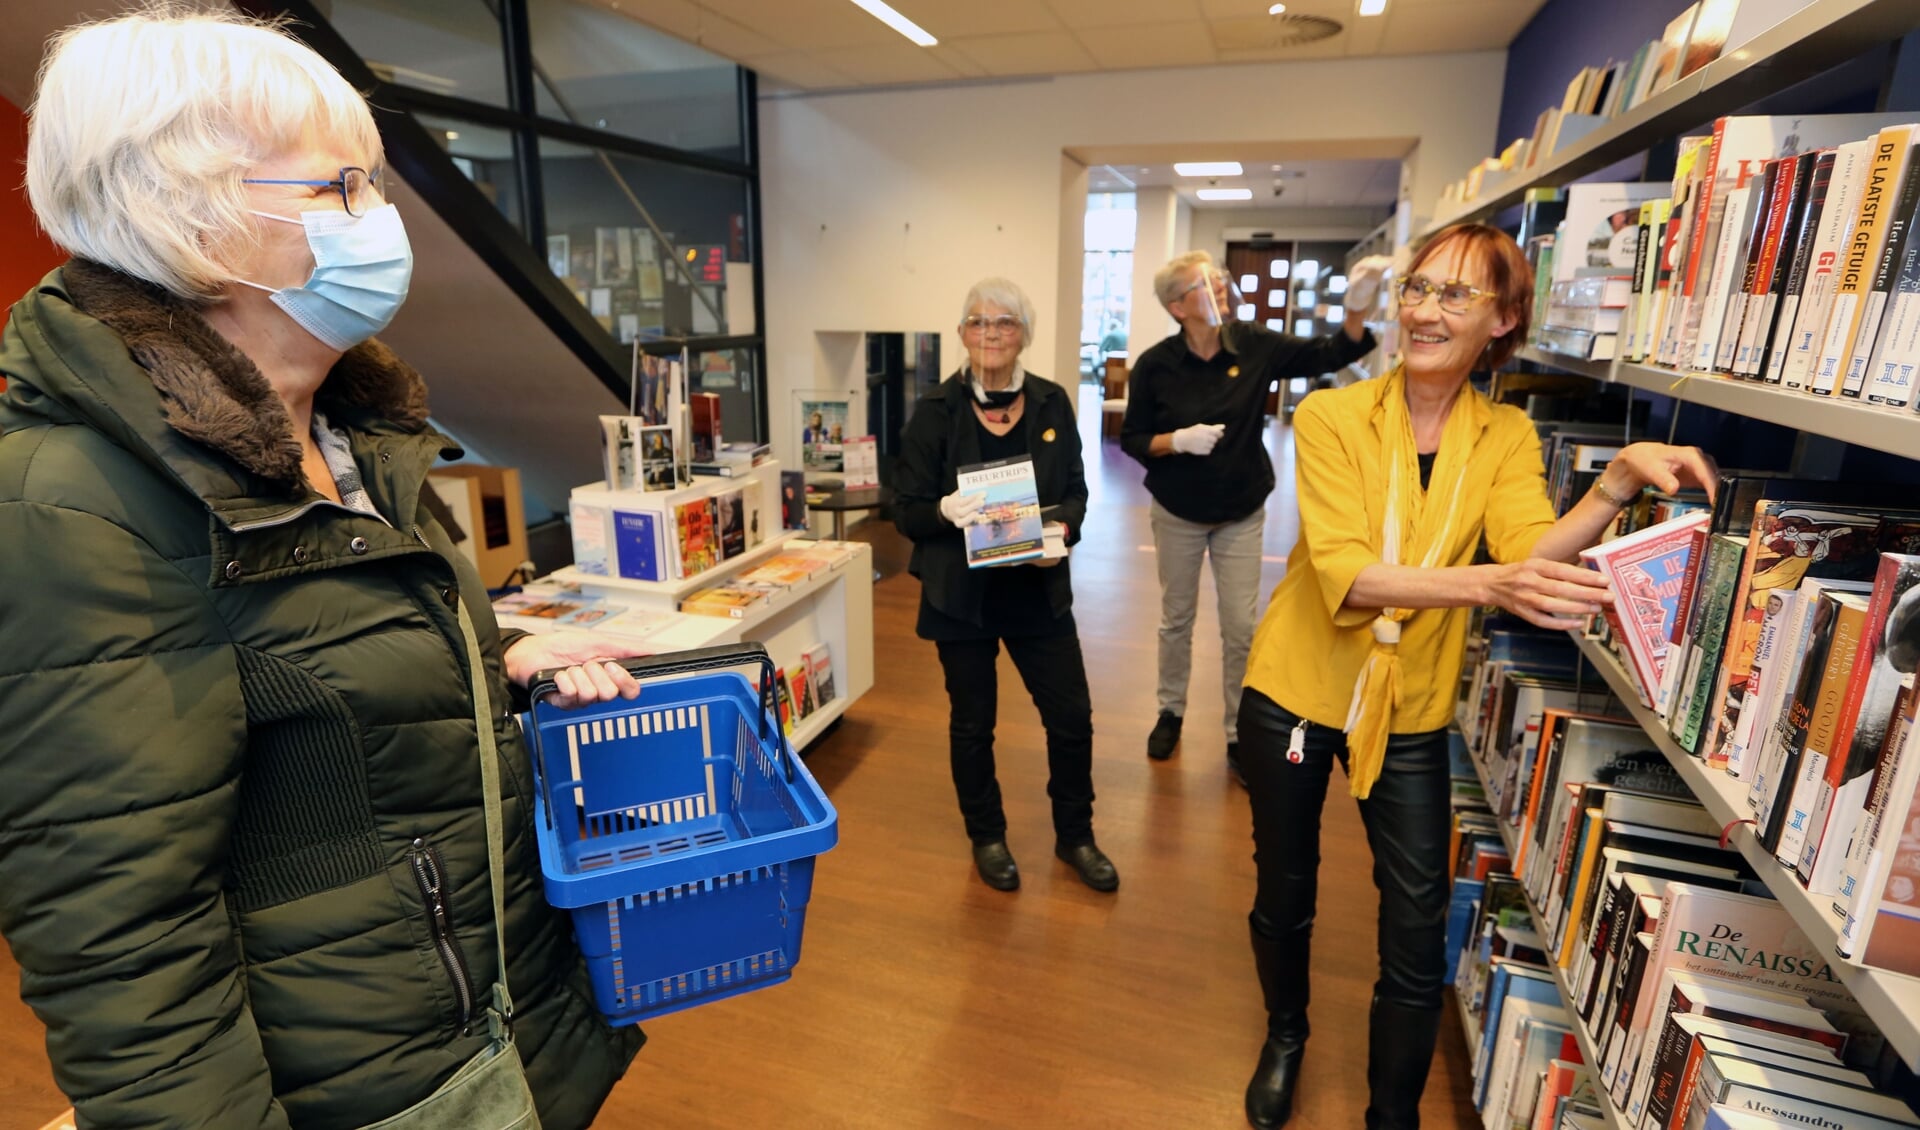 Vestigingscoördinator Karin Tacx (met gele blouse) is blij dat ze weer bezoekers mag ontvangen in de bibliotheek Schagen.